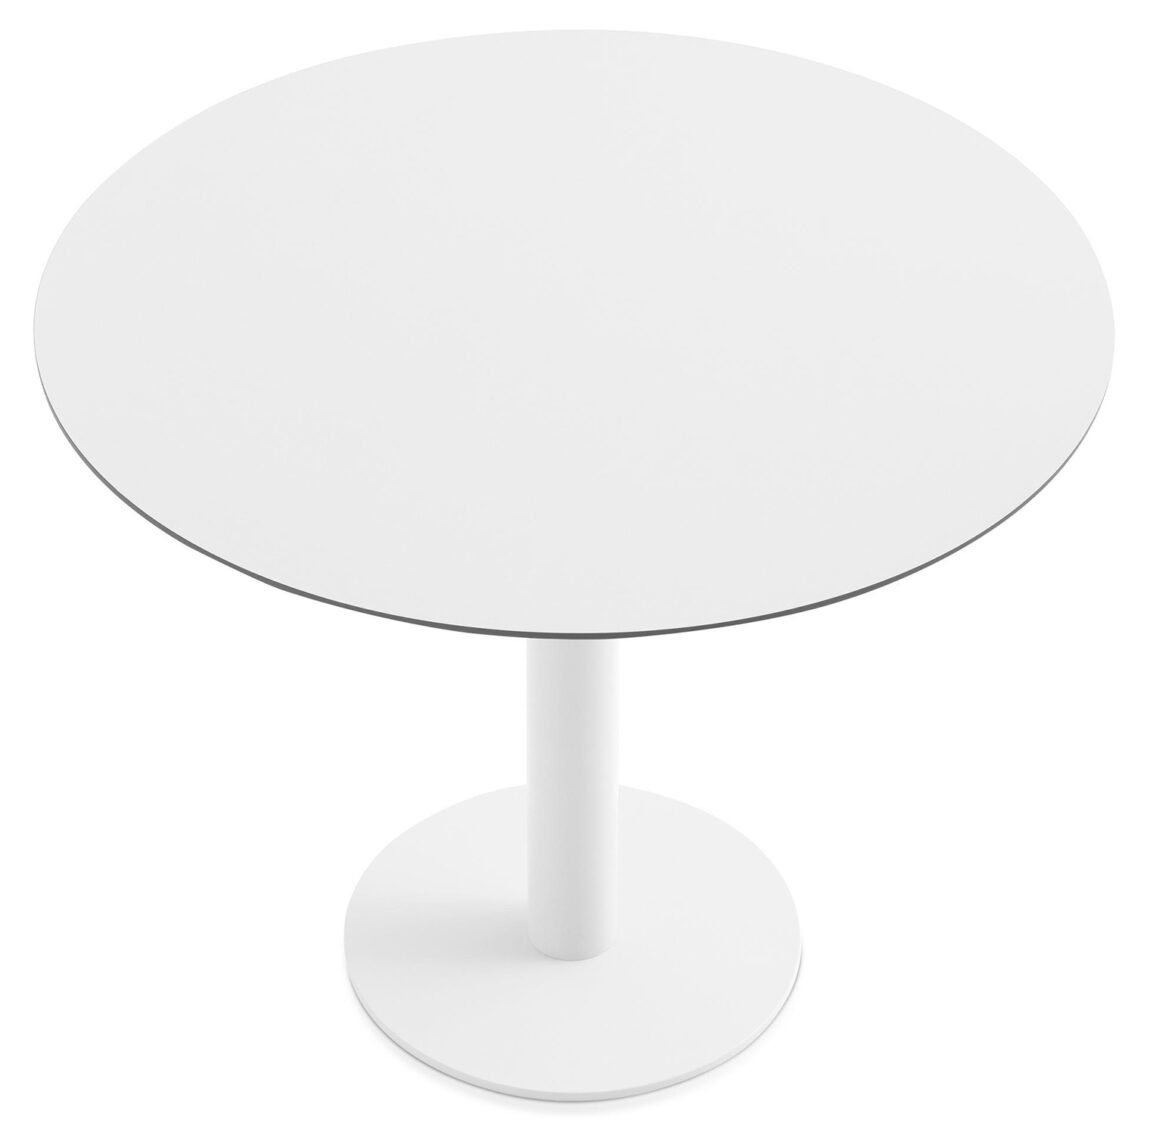 Designové jídelní stoly Mona Table